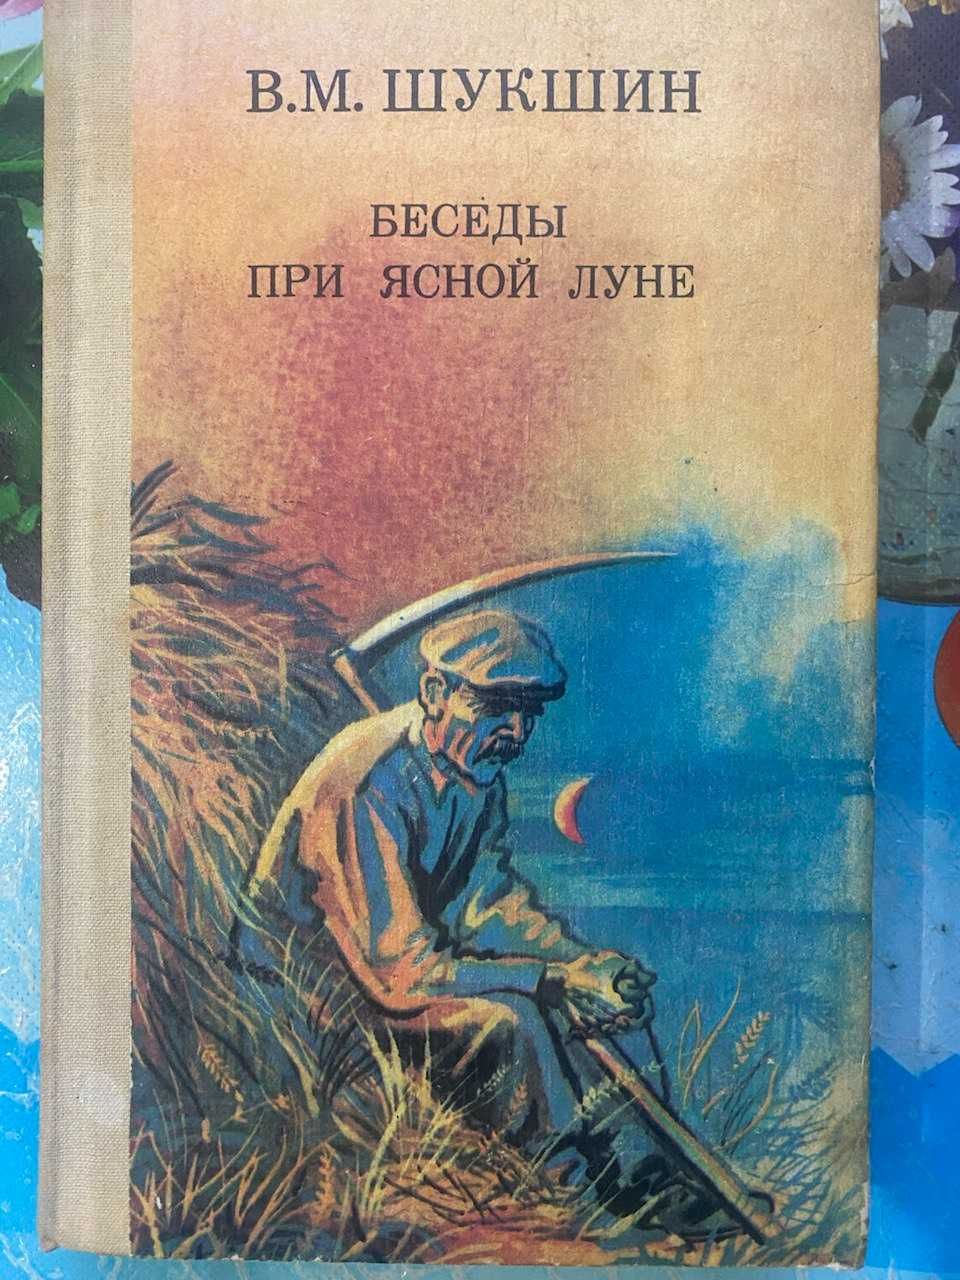 В.М.Шукшин Беседы при ясной луне. 1991г.